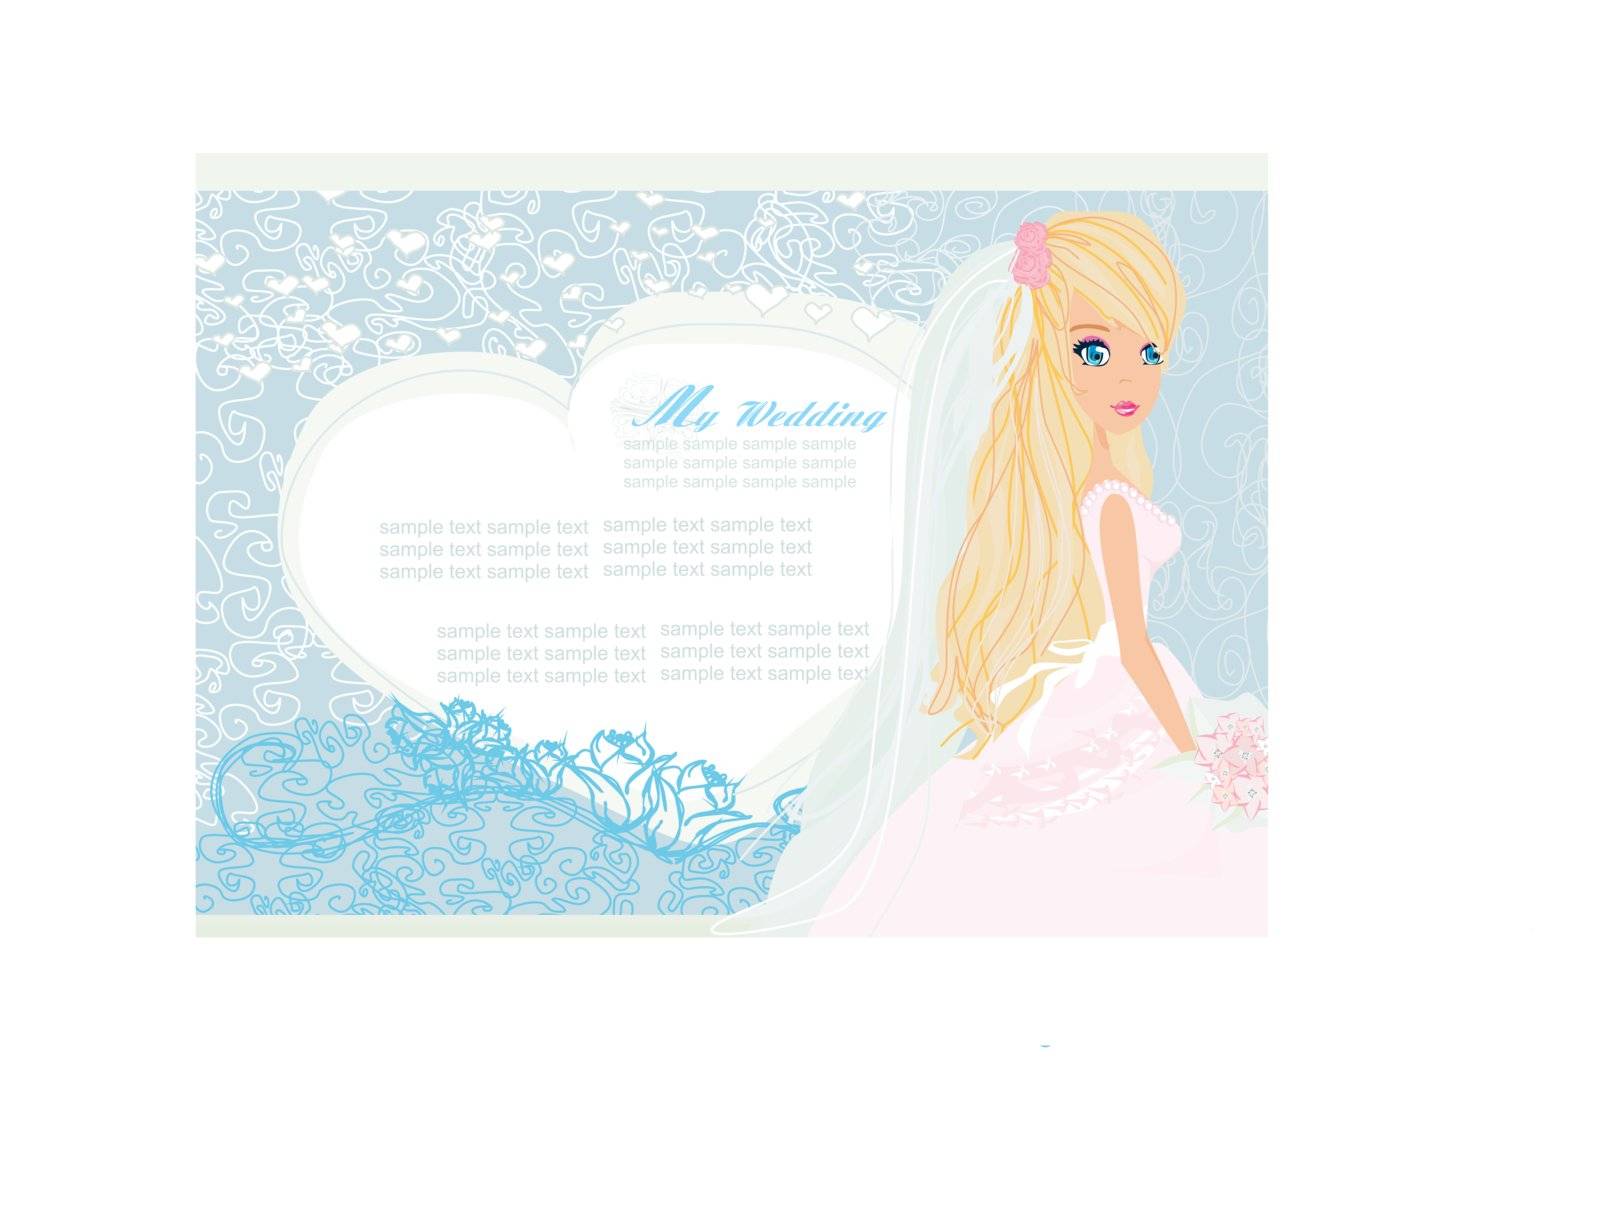 Beautiful bride card